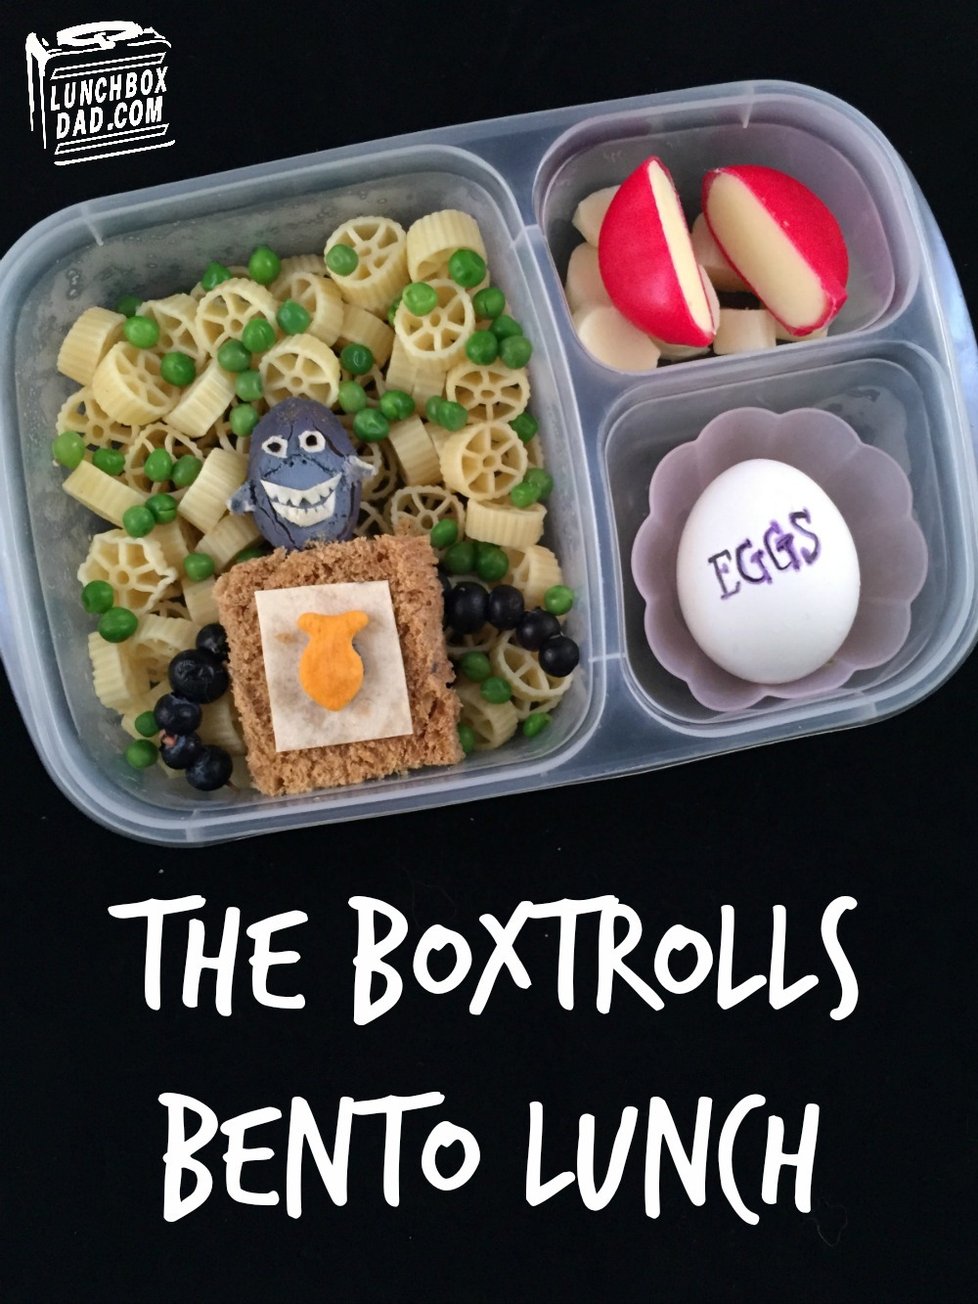 Beau Coffron alias LunchboxDad připravuje svým třem dcerám každý den do školy svačiny plné pohádkových postav